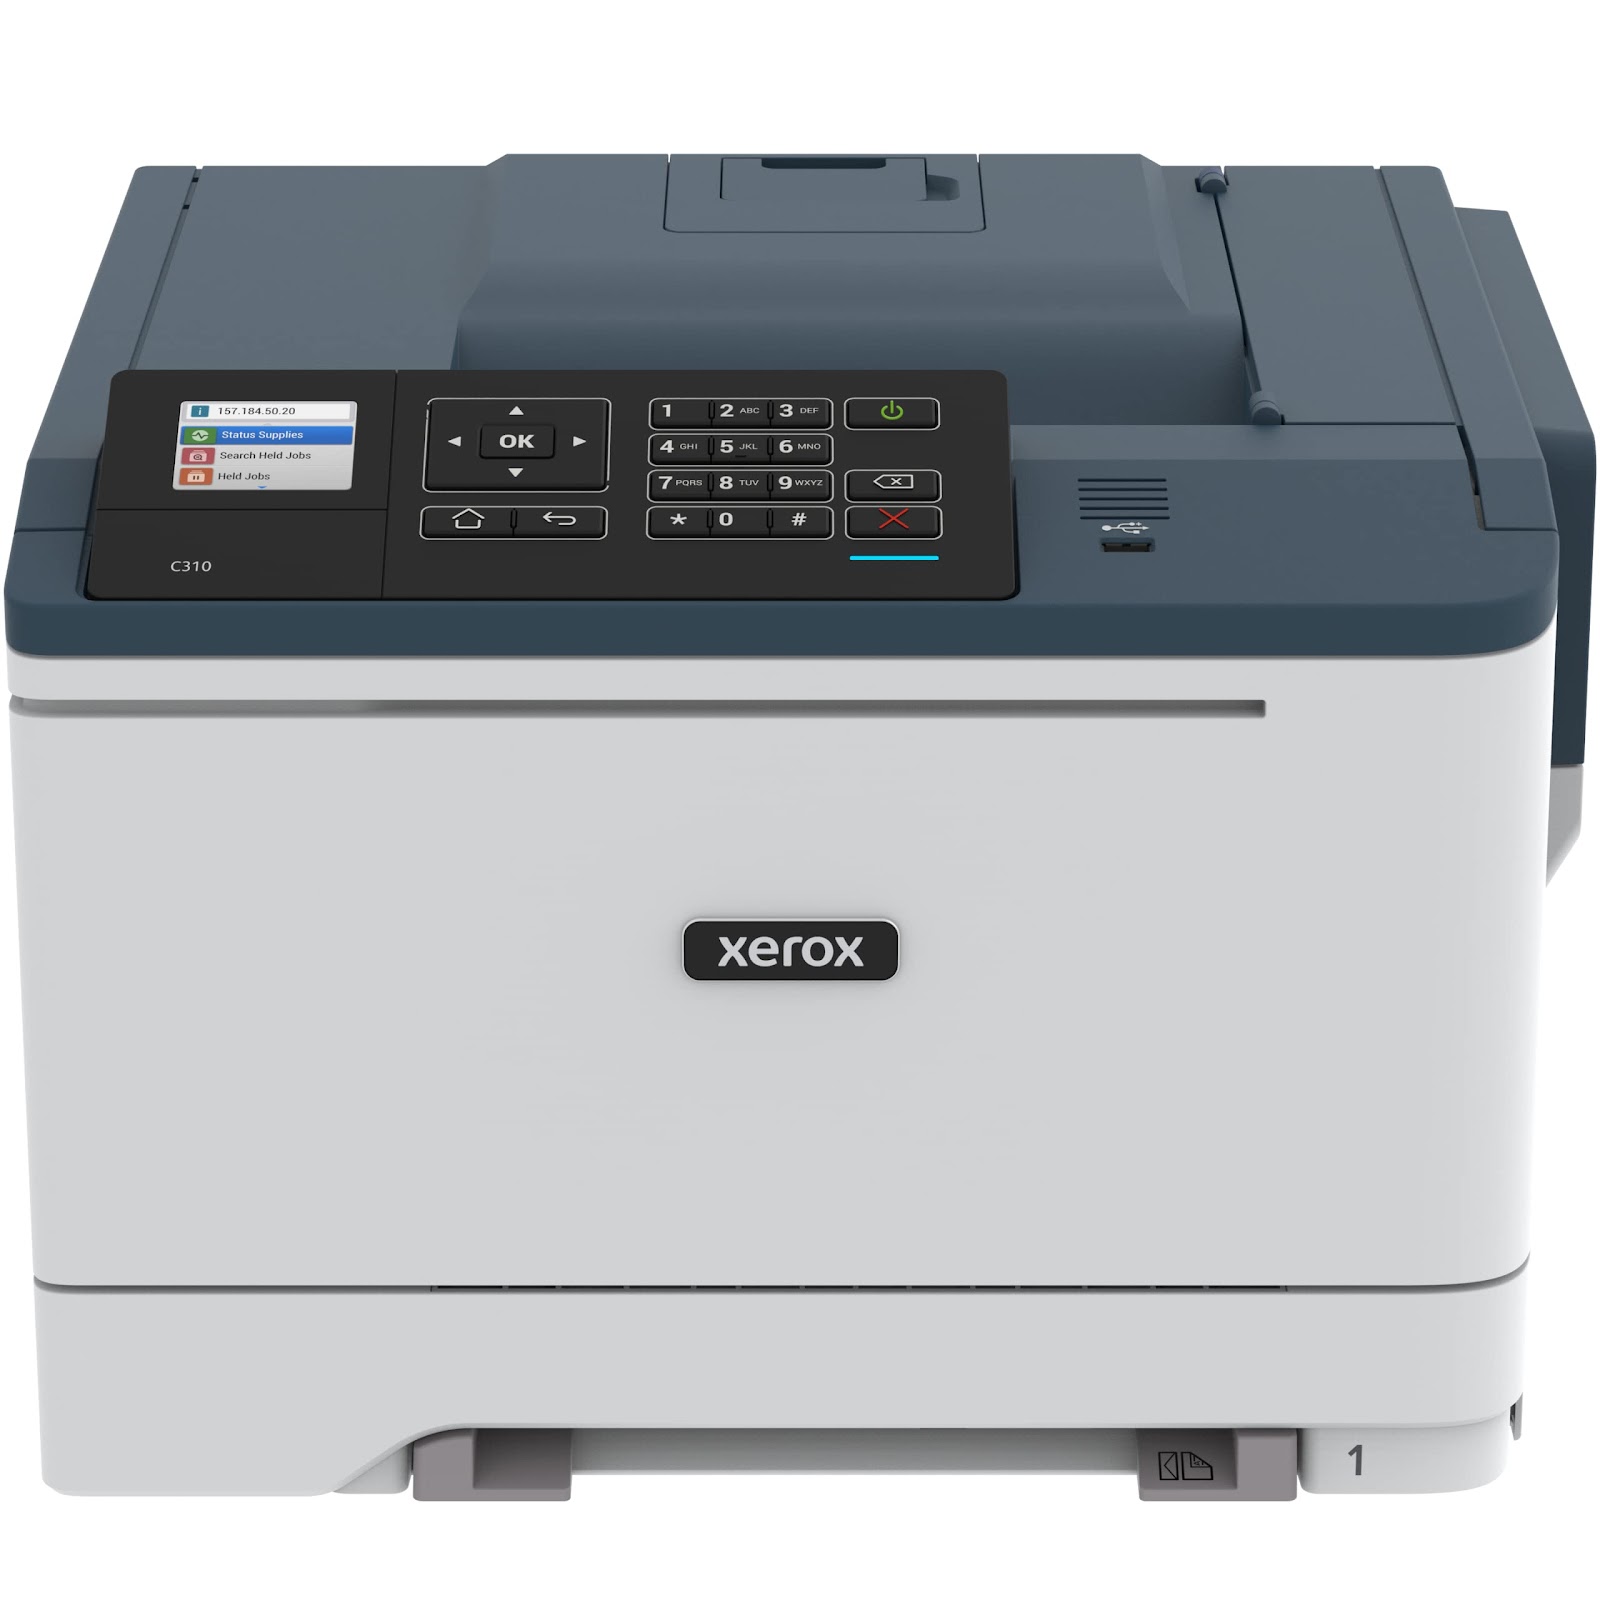 Xerox Impressora a laser colorida sem fio C310/DNI